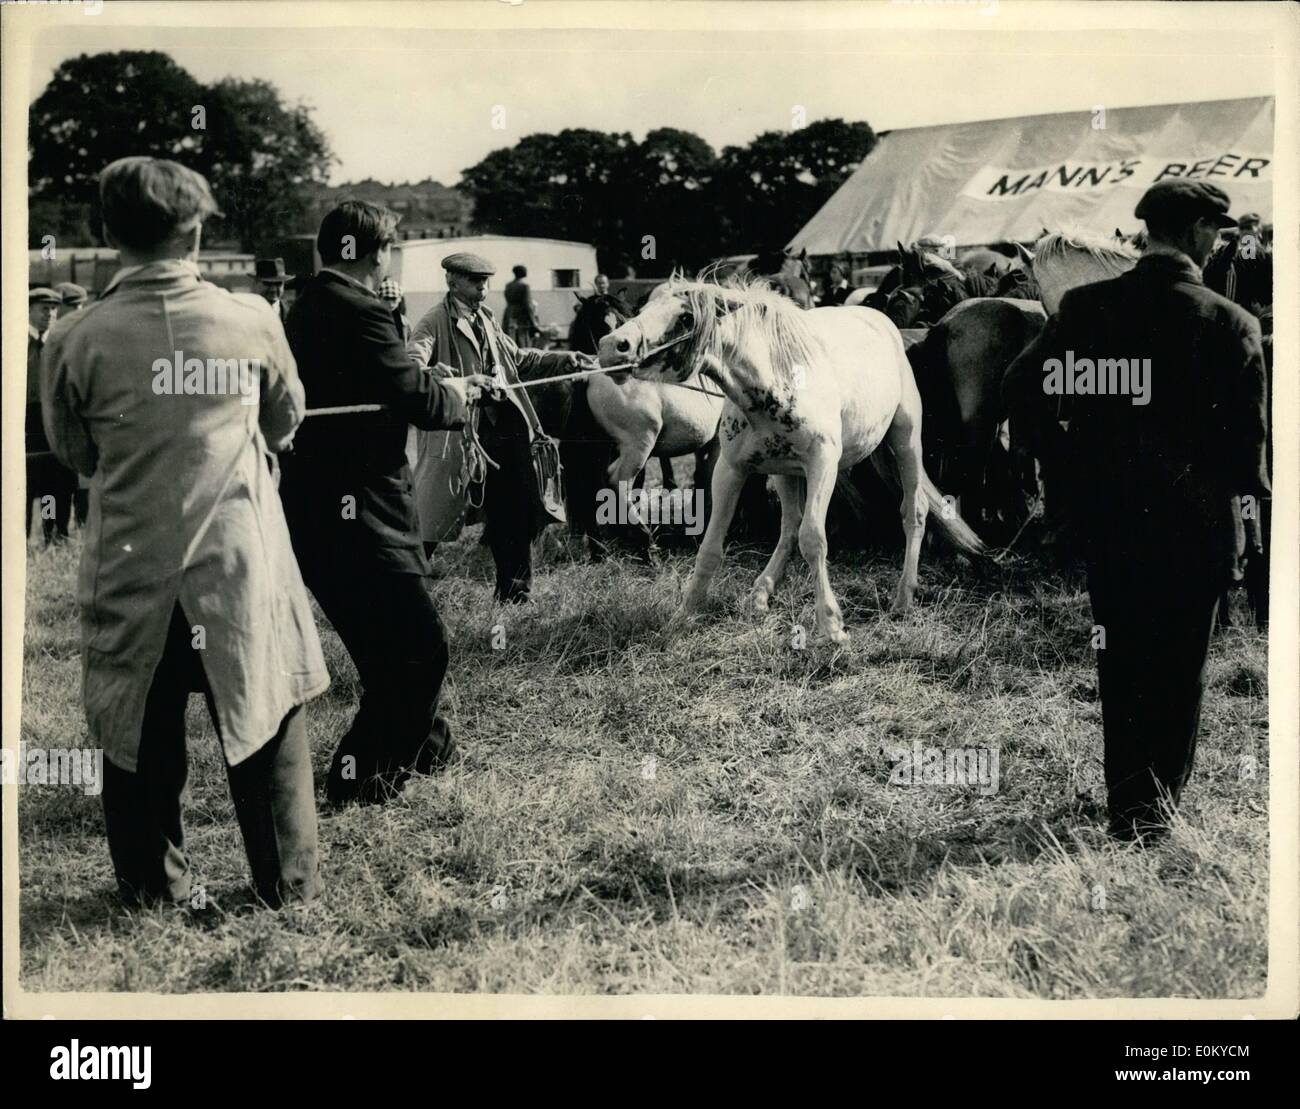 Sett. 09, 1952 - 4.9.52 fastidioso pony a Barnet Horse Fair. Il famoso Barnet Horse Fair si è aperta oggi e questo Pony Welsh ha dato un posto di difficoltà quando viene portato fuori in vendita. Foto Stock